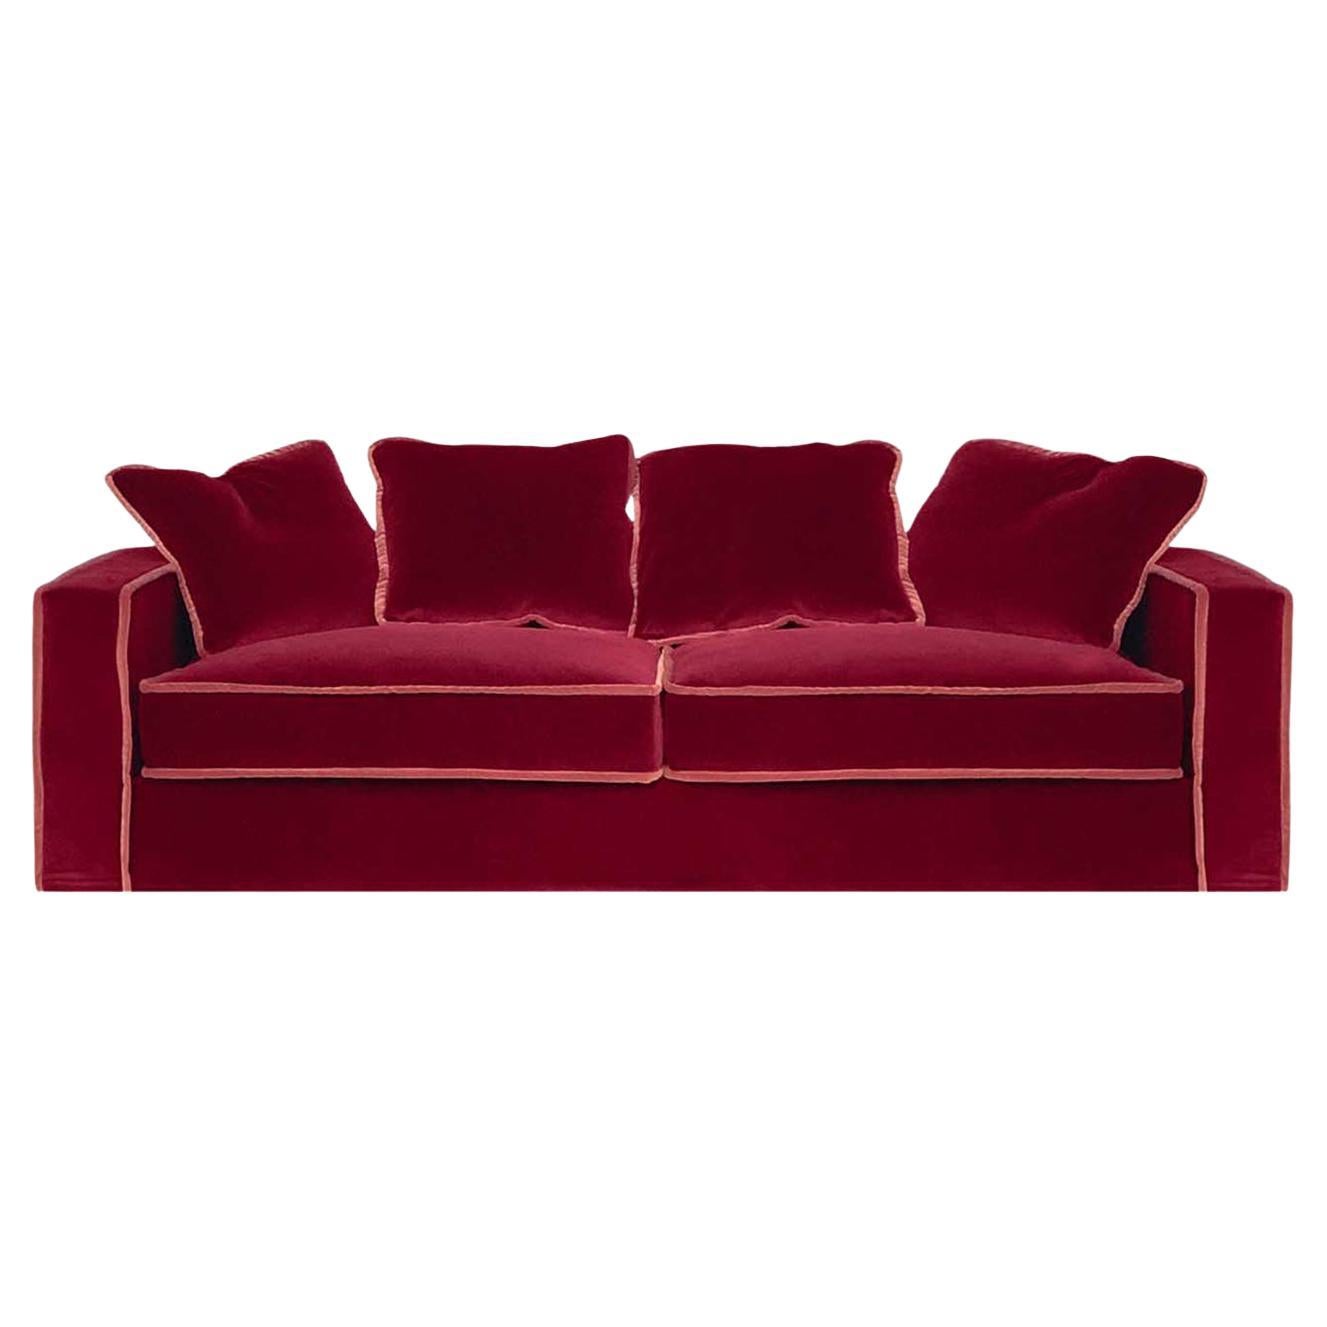 Raffaella Bio Red and Orange 3-Seater Sofa For Sale